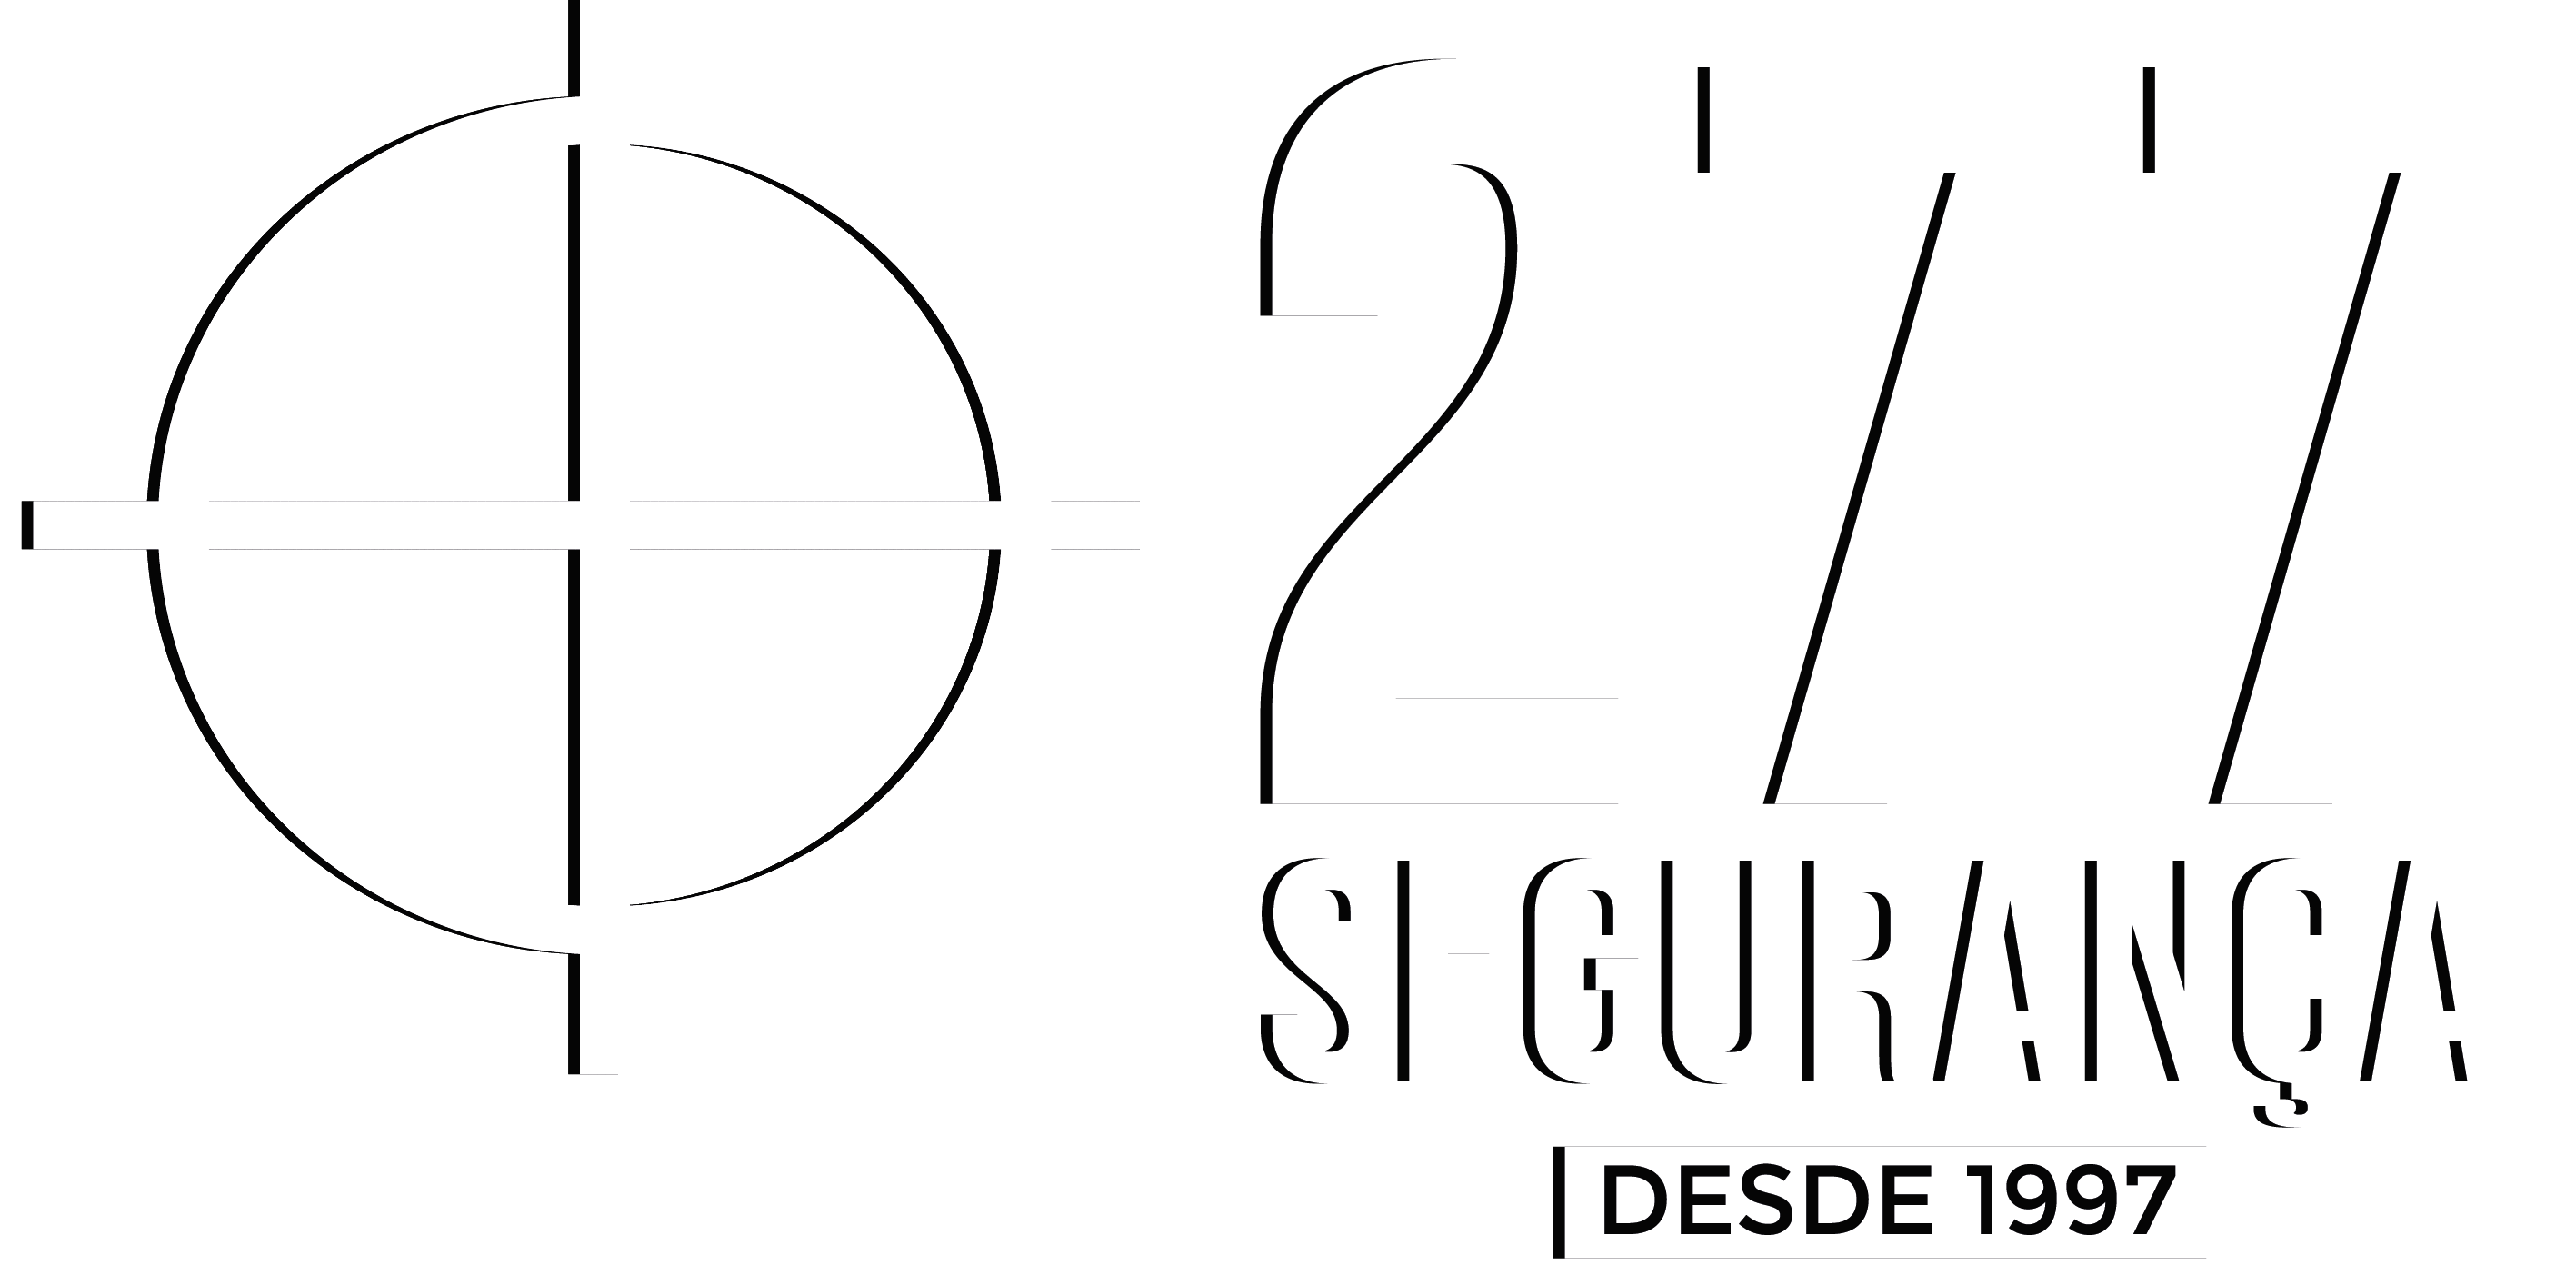 277 Segurança